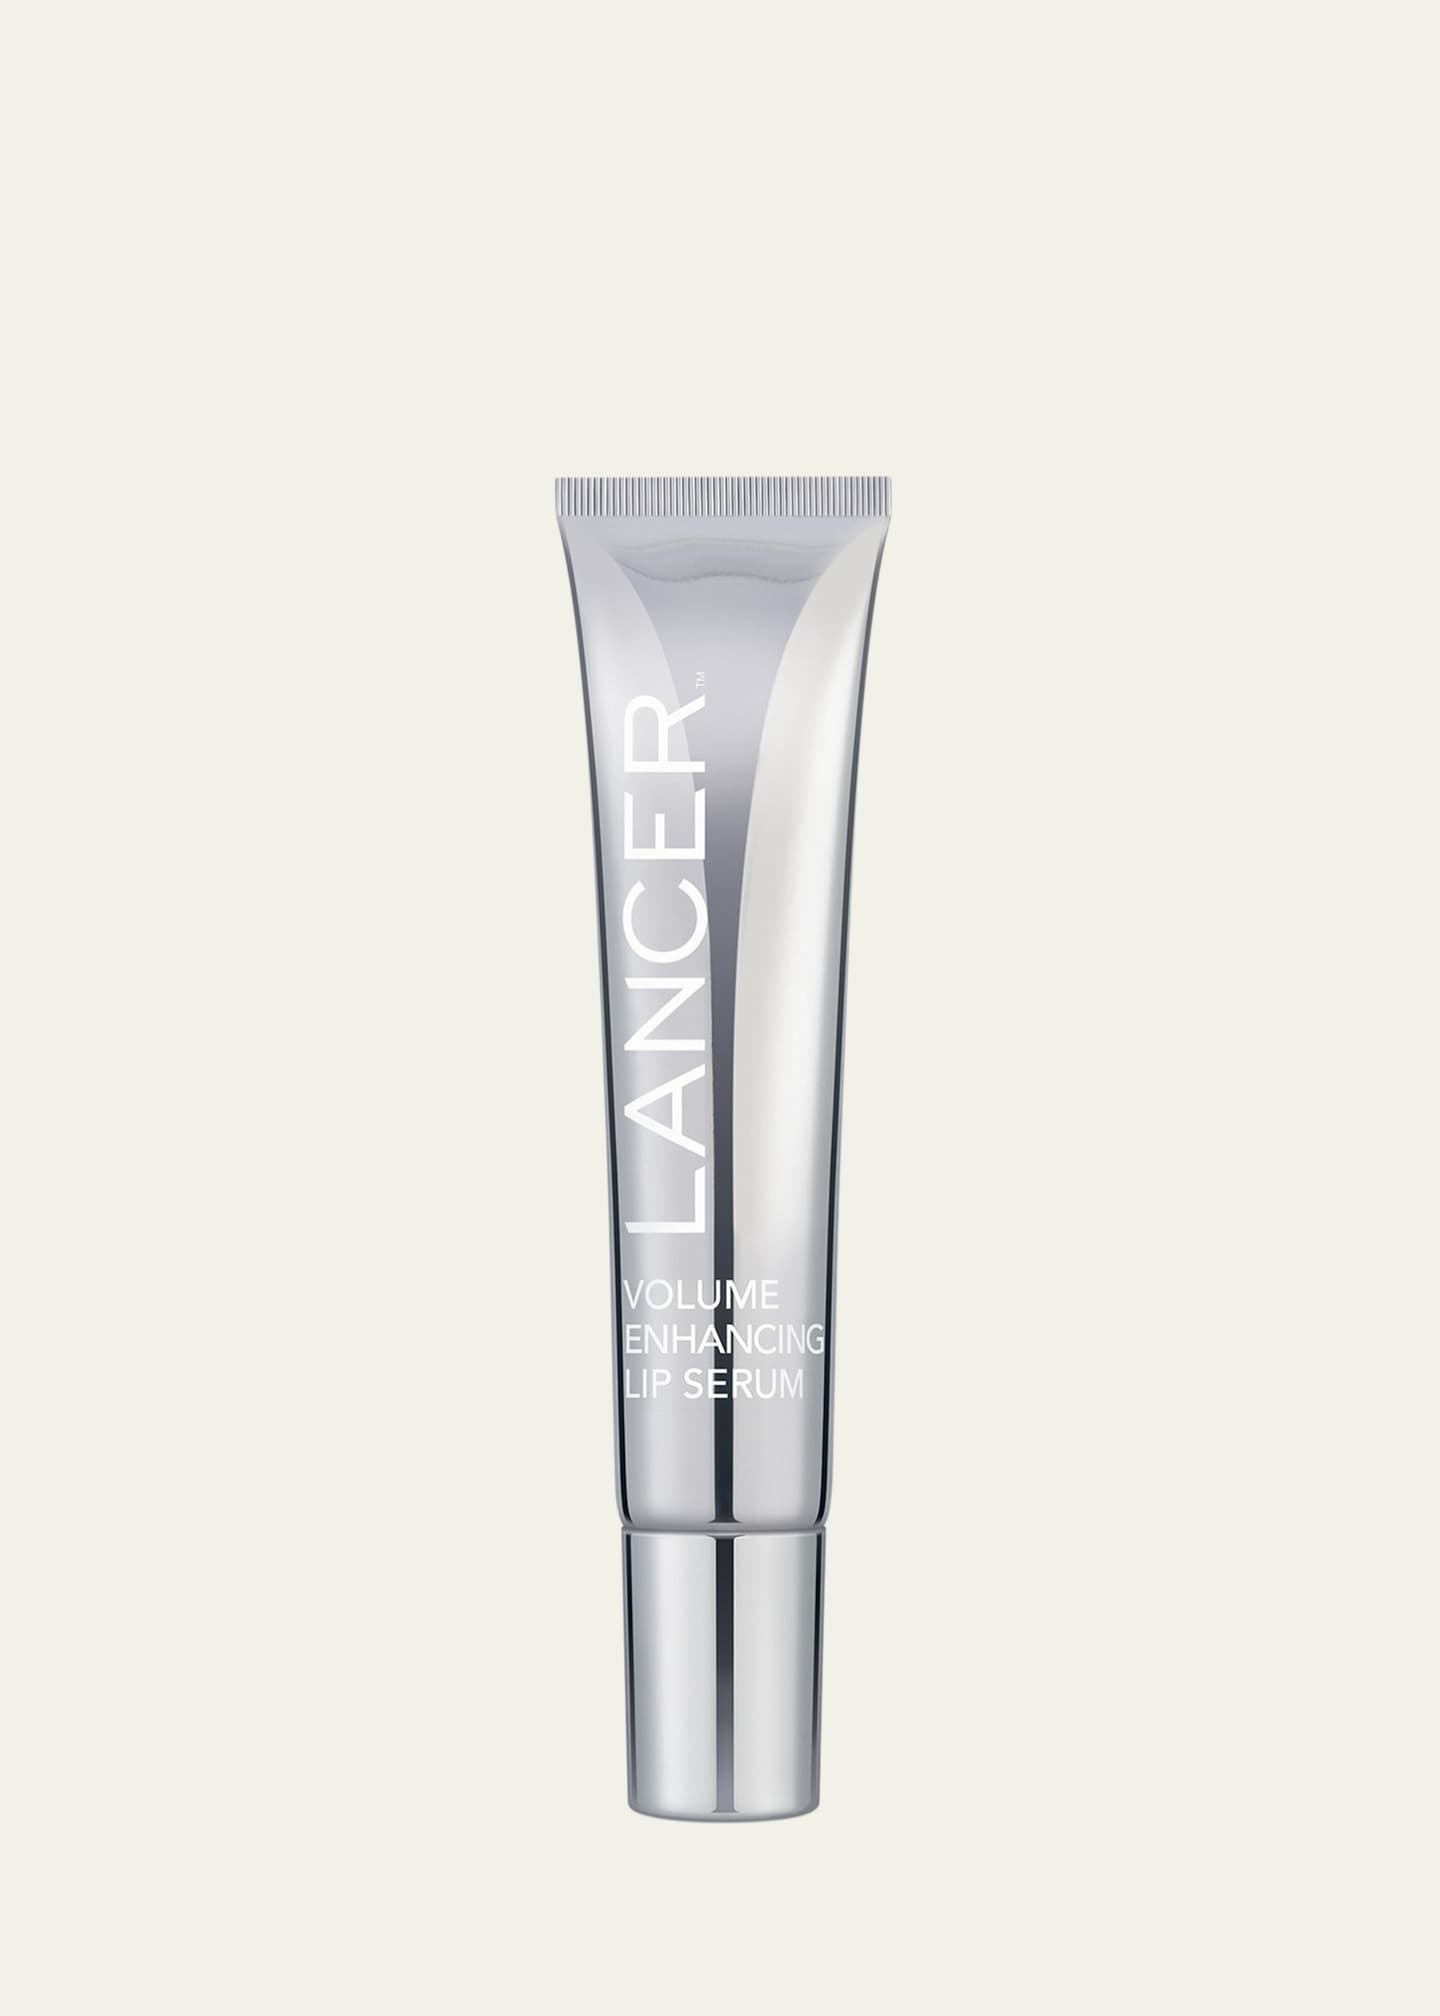 Lancer Volume Enhancing Lip Serum, 0.5 oz.